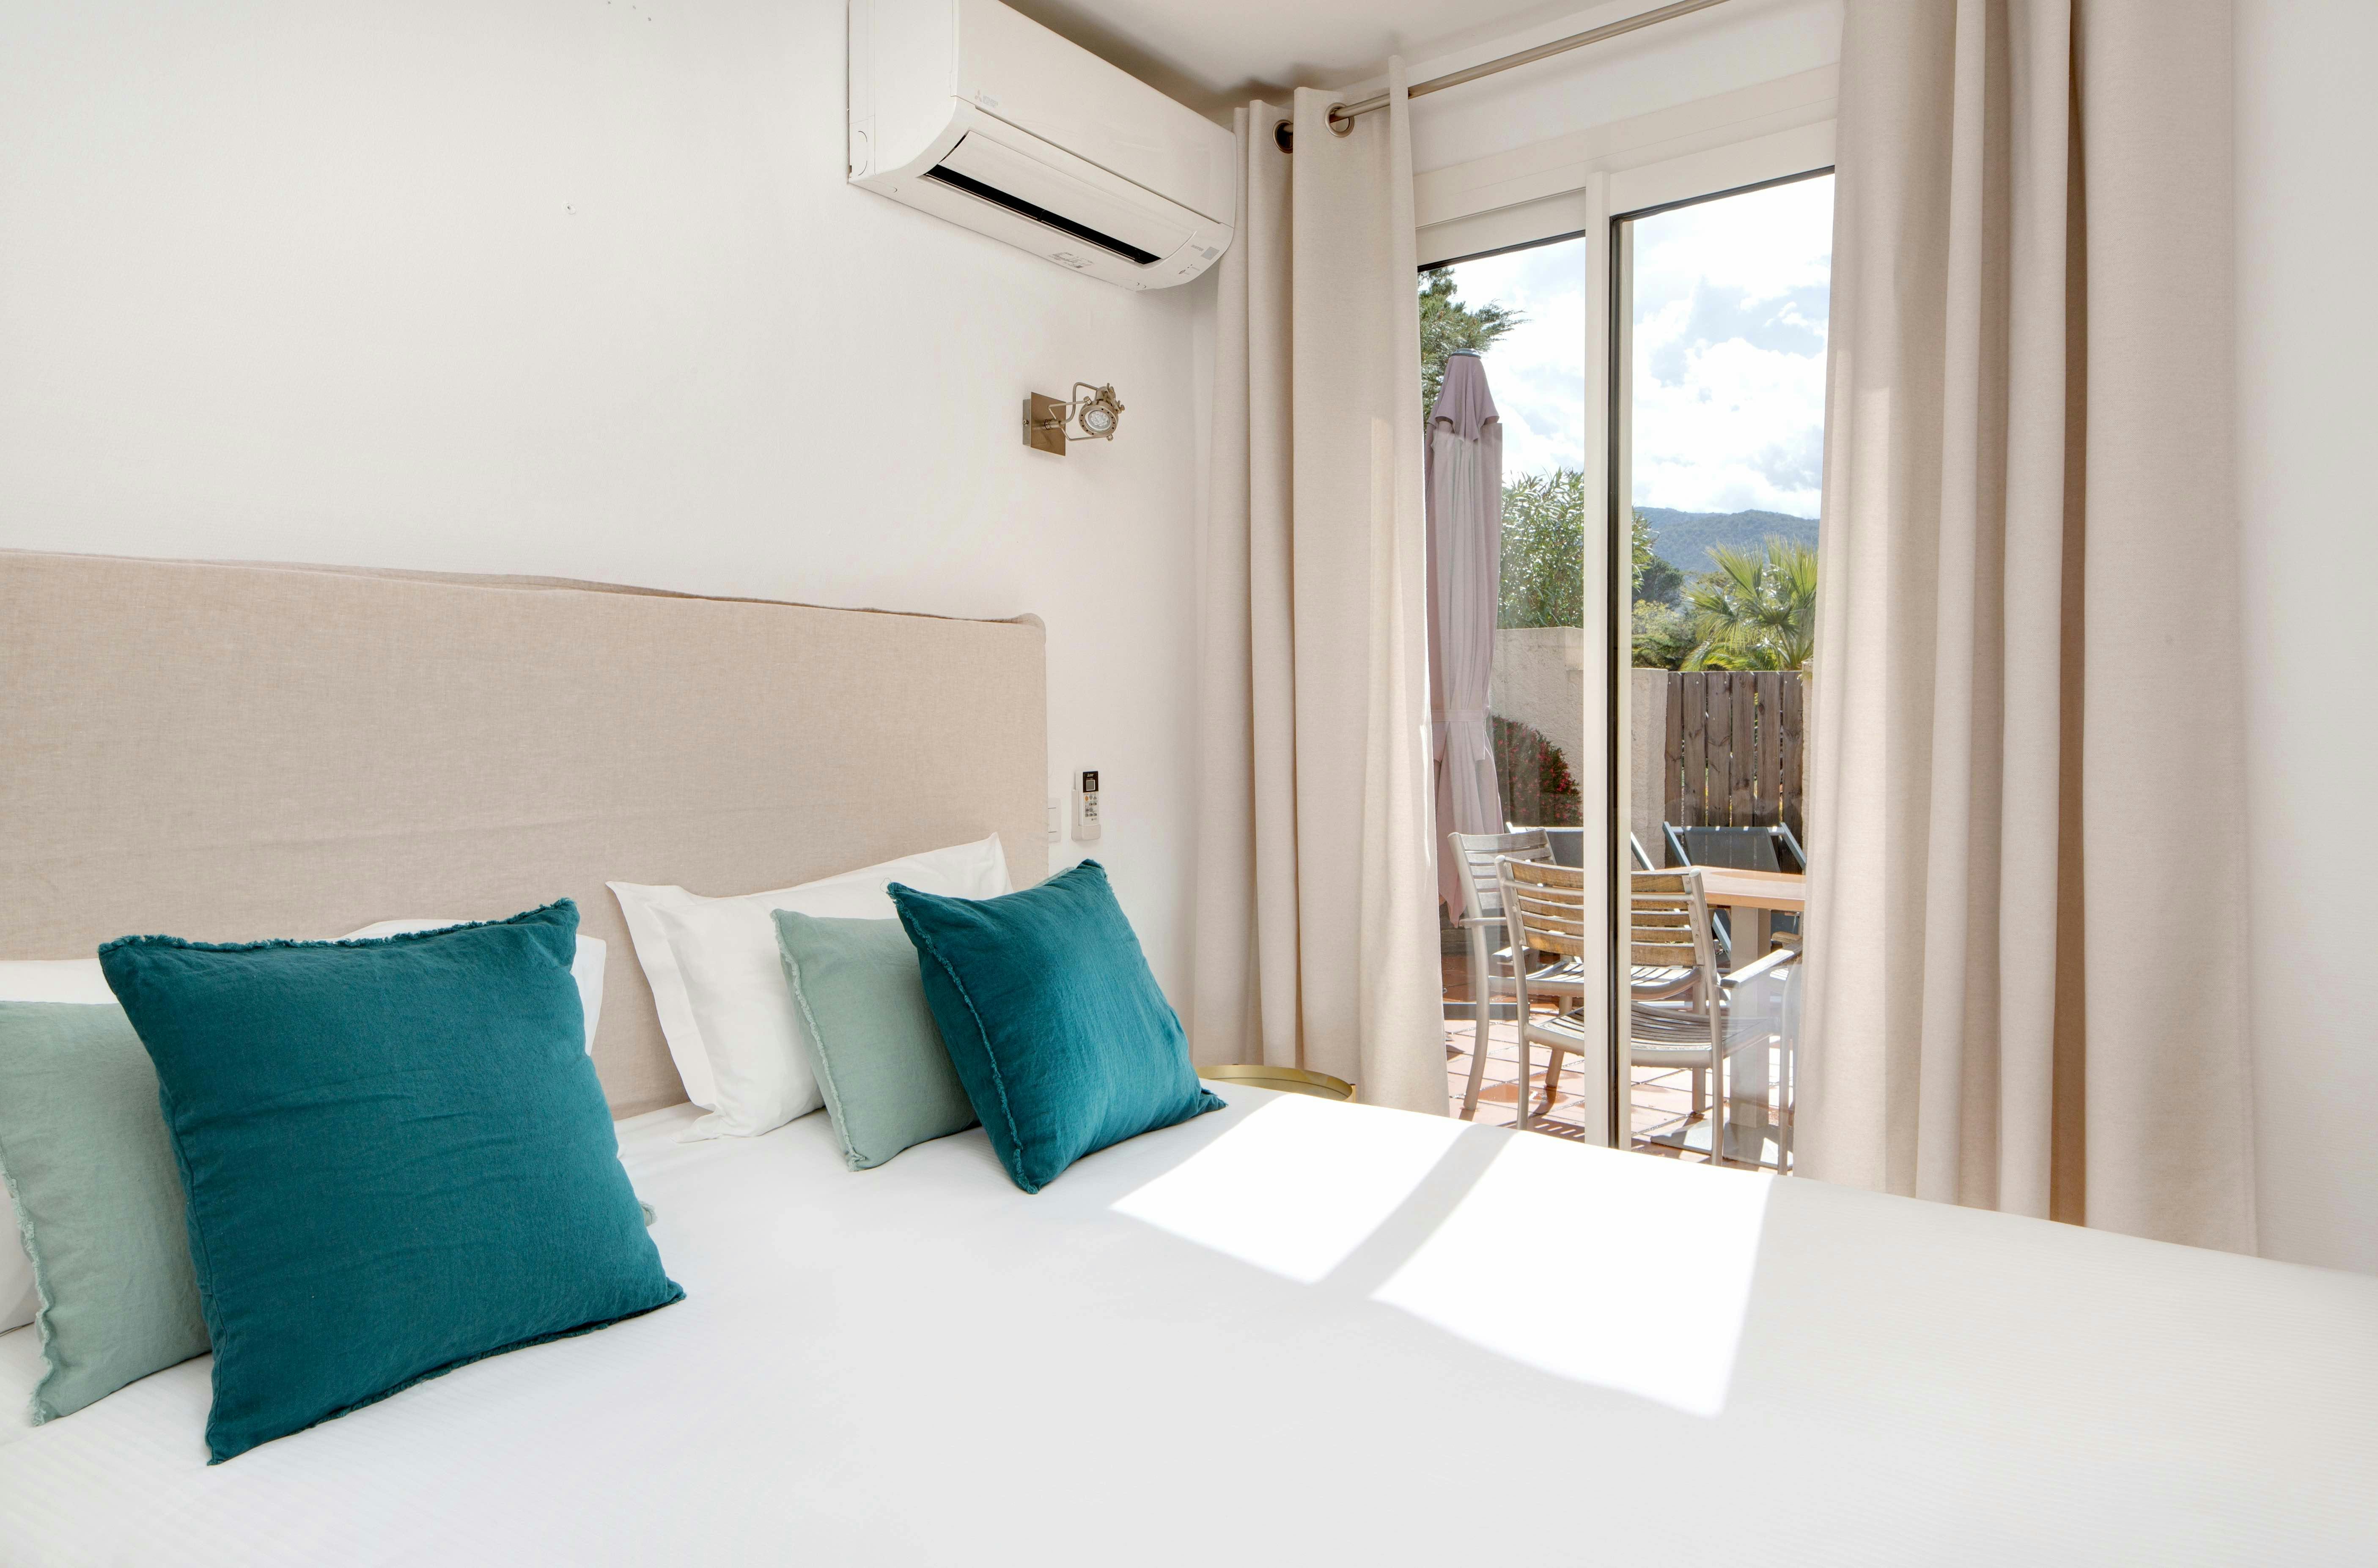 Chambre de la junior suite vue jardin de l'hôtel les mouettes situé entre Argelès et Collioure